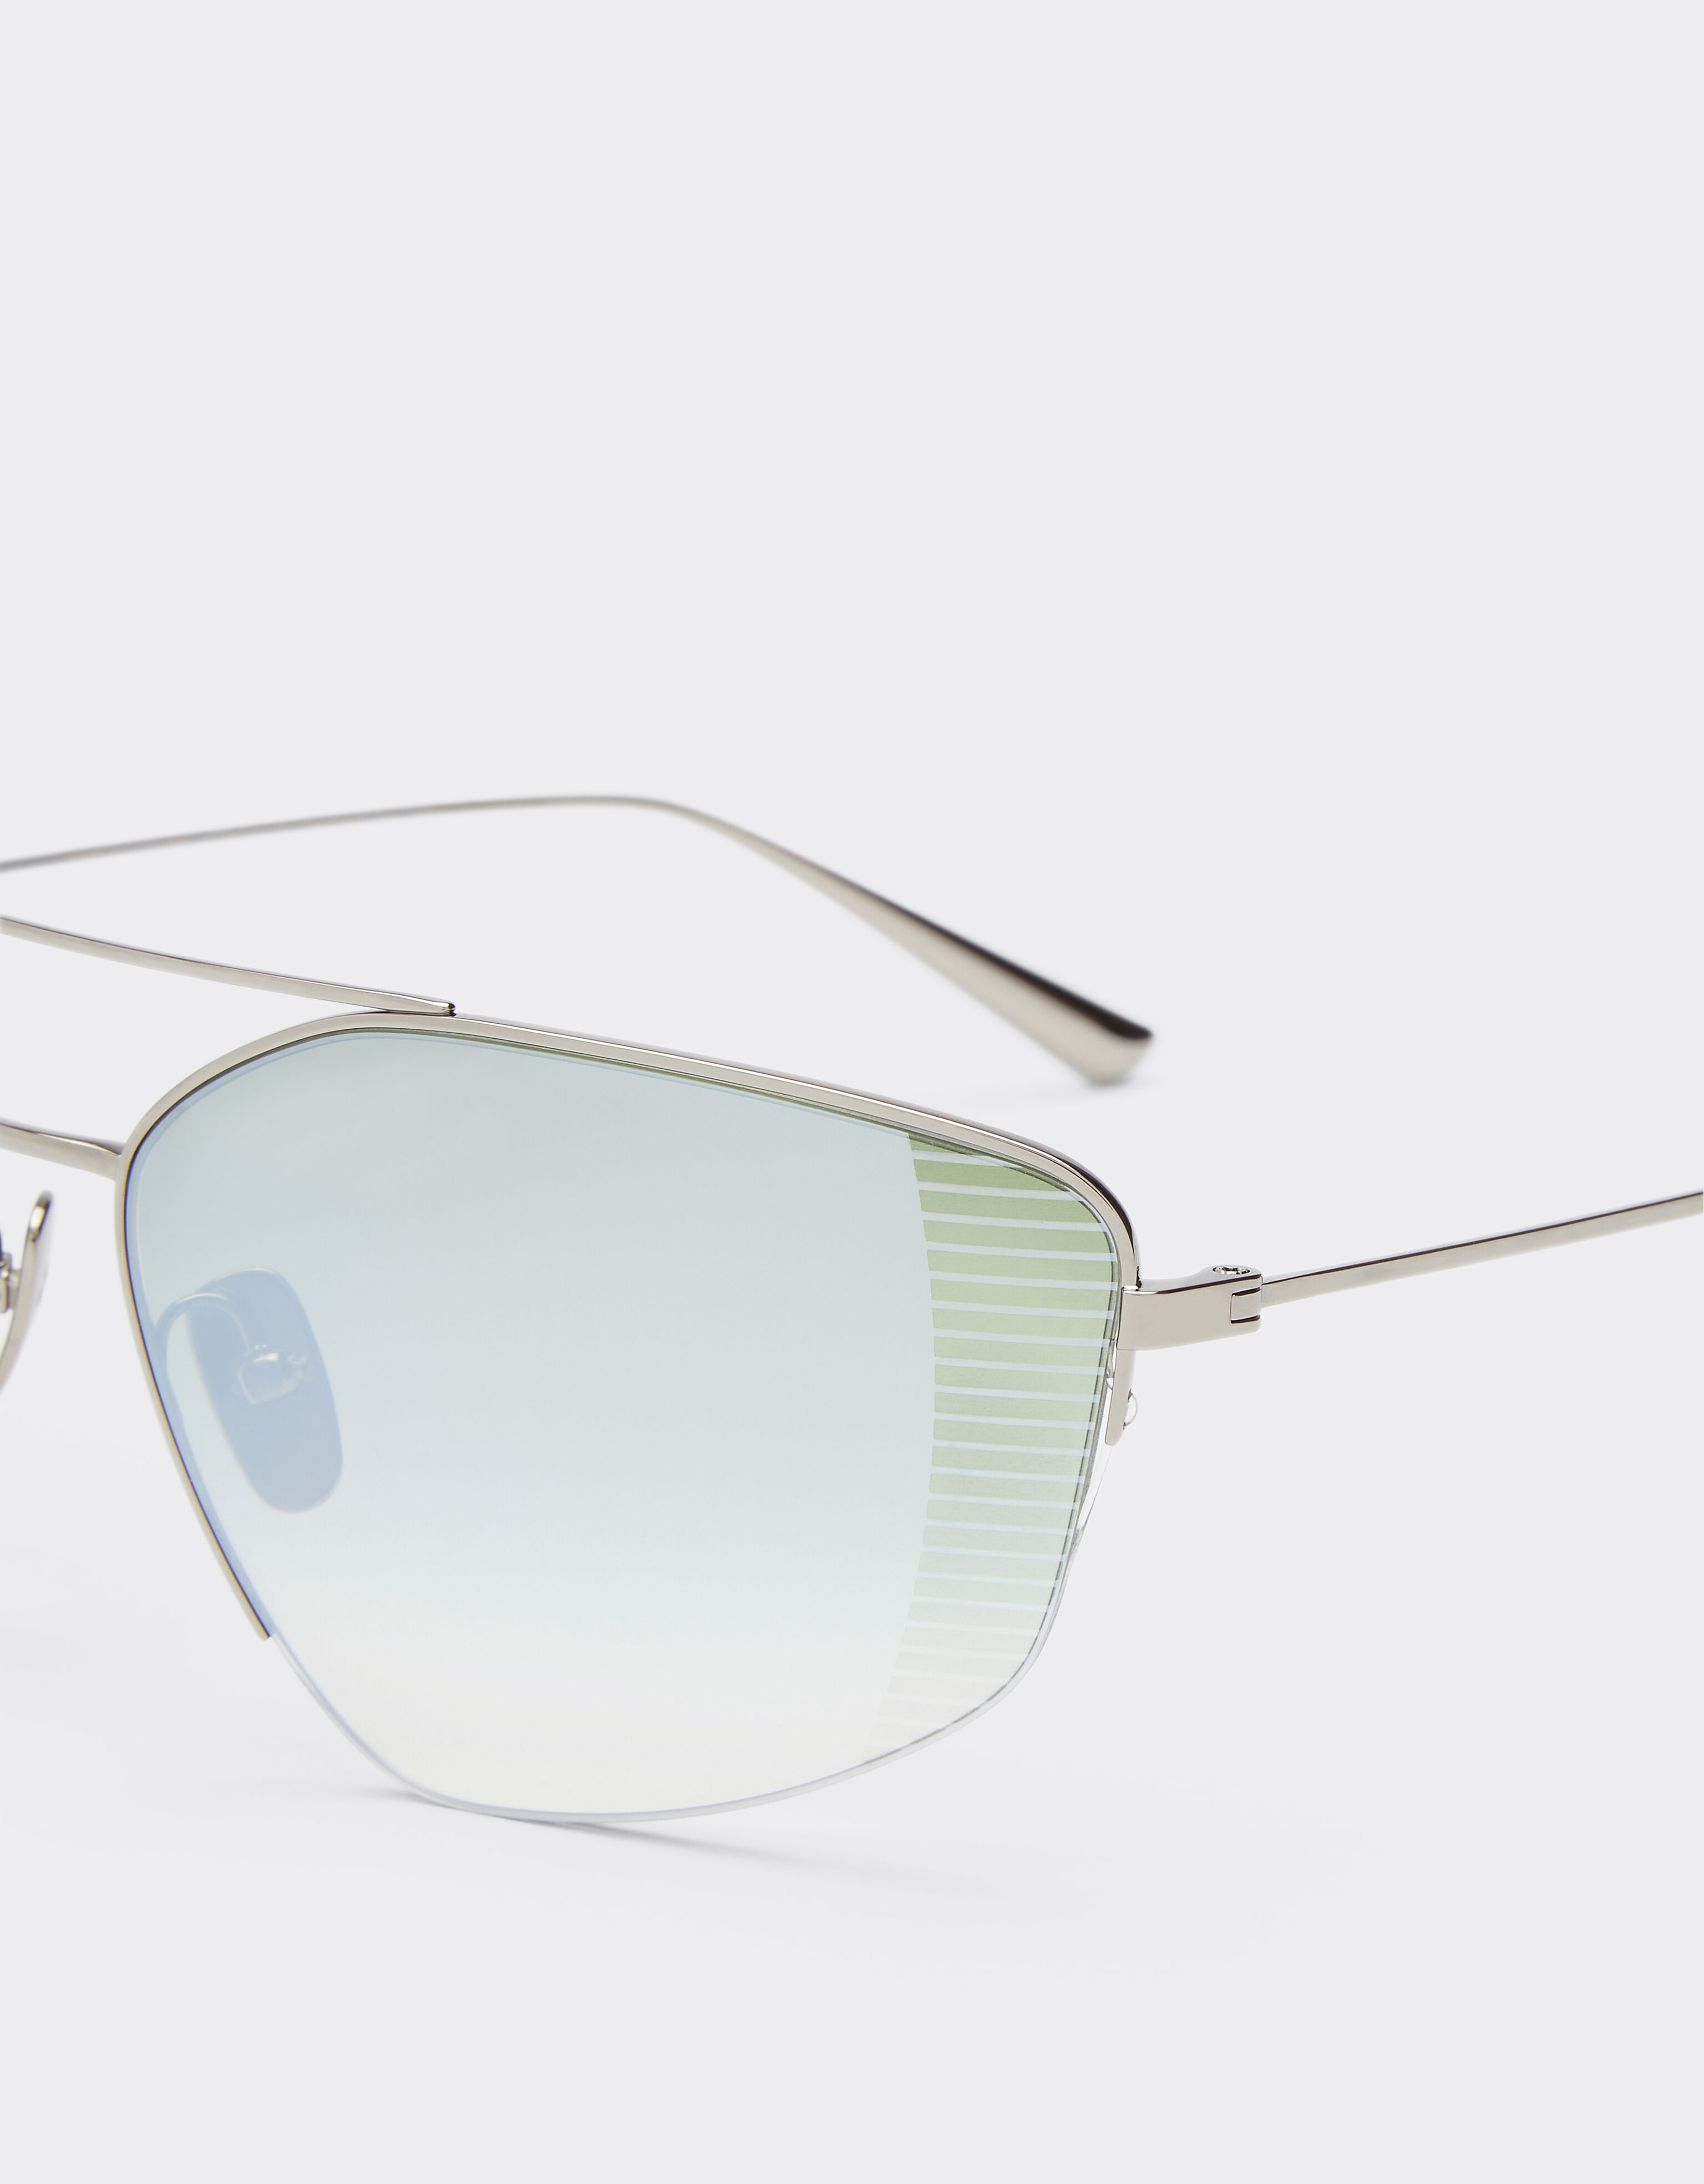 Ferrari Ferrari sunglasses in silver titanium with gradient green mirror lenses Silver F1252f